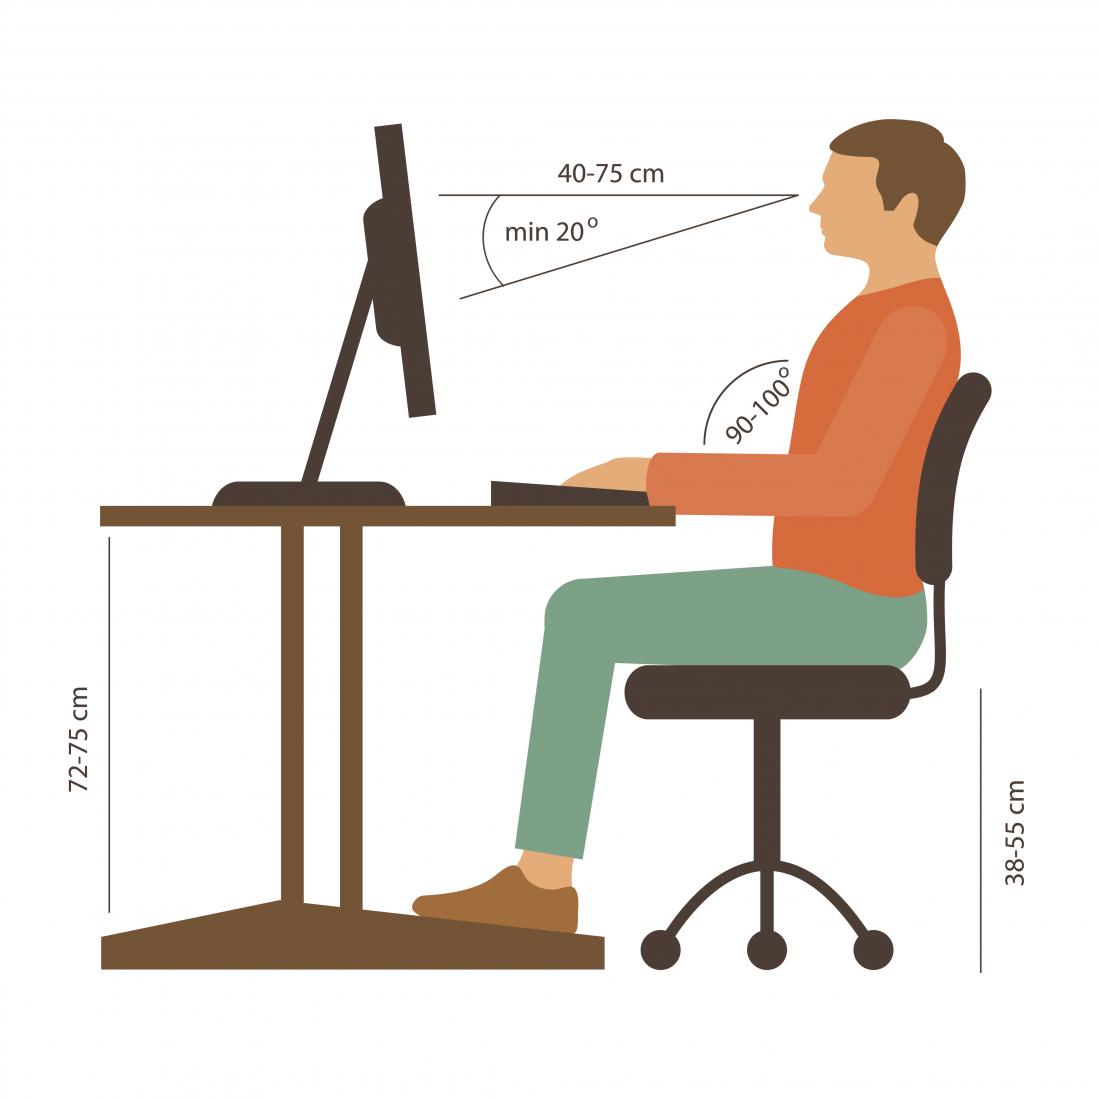 cách ngồi đúng để cải thiện đau lưng